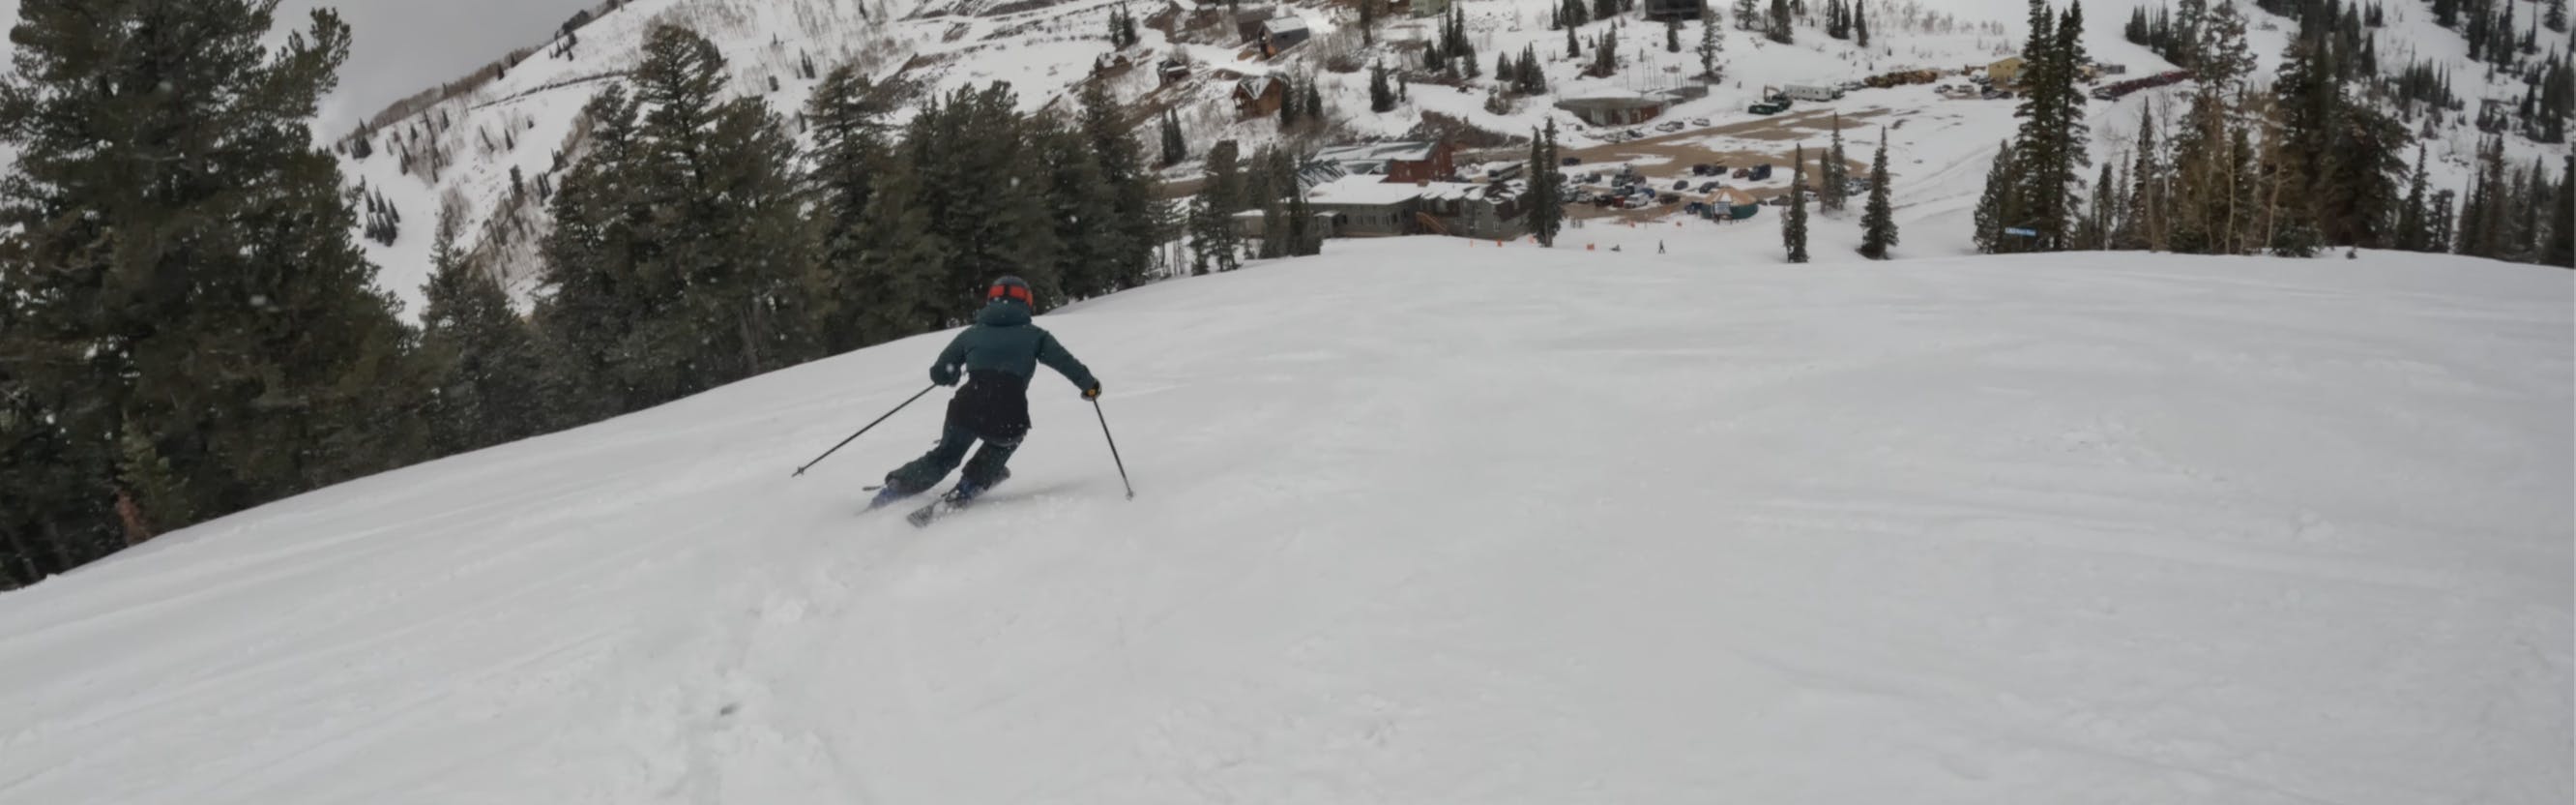 A skier turning down a snowy trail. 